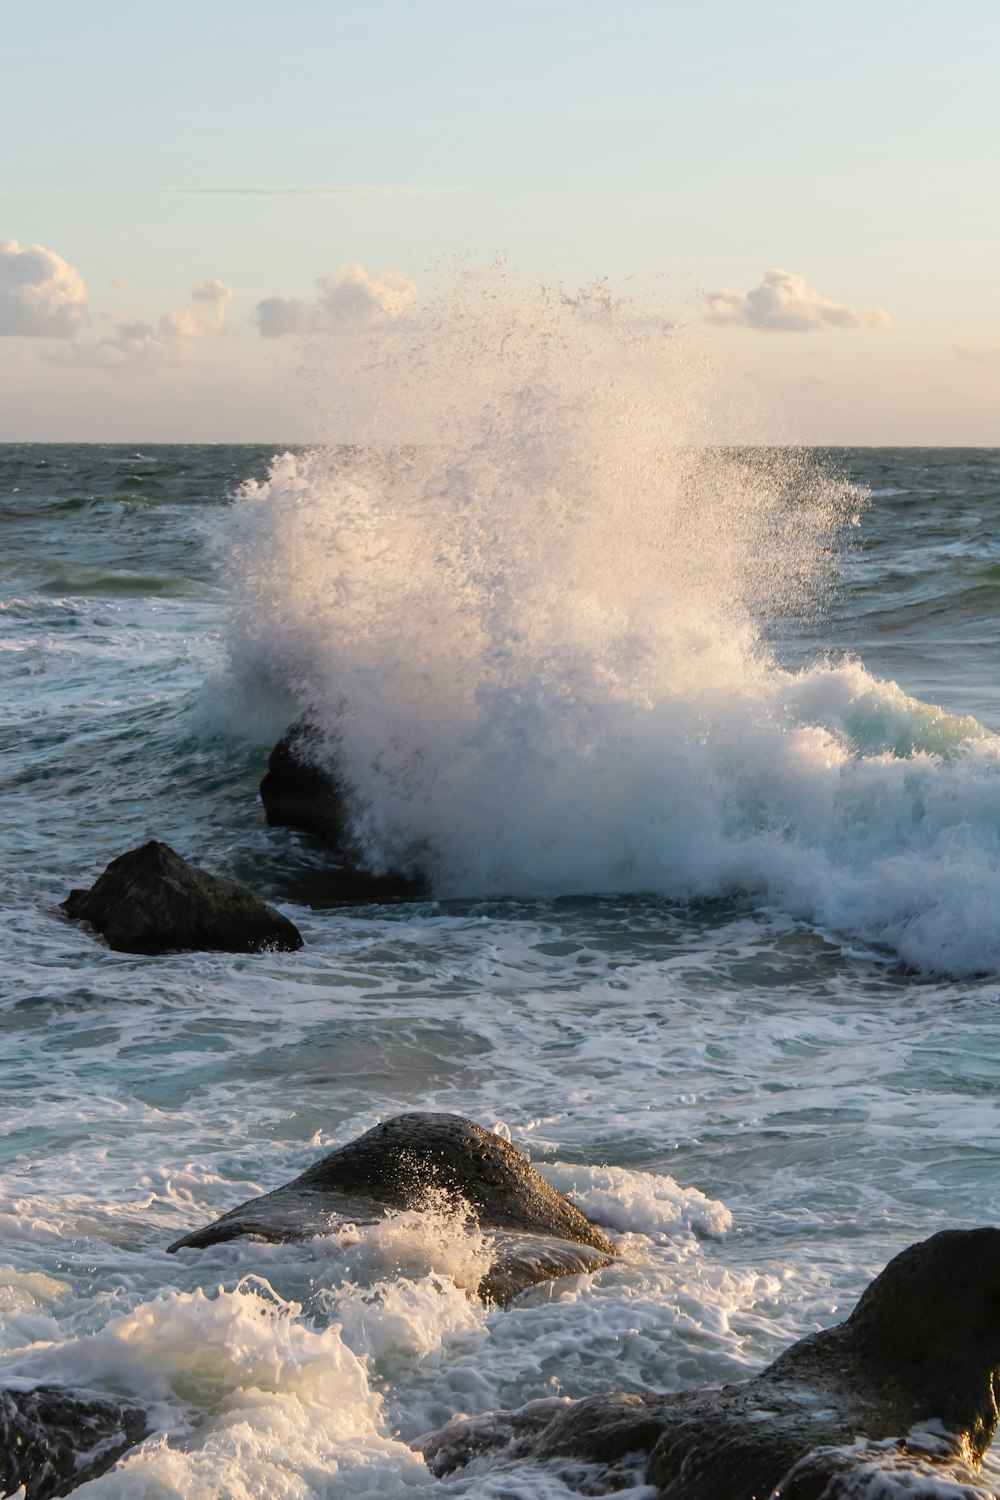 ocean waves crashing on black rock formation during daytime